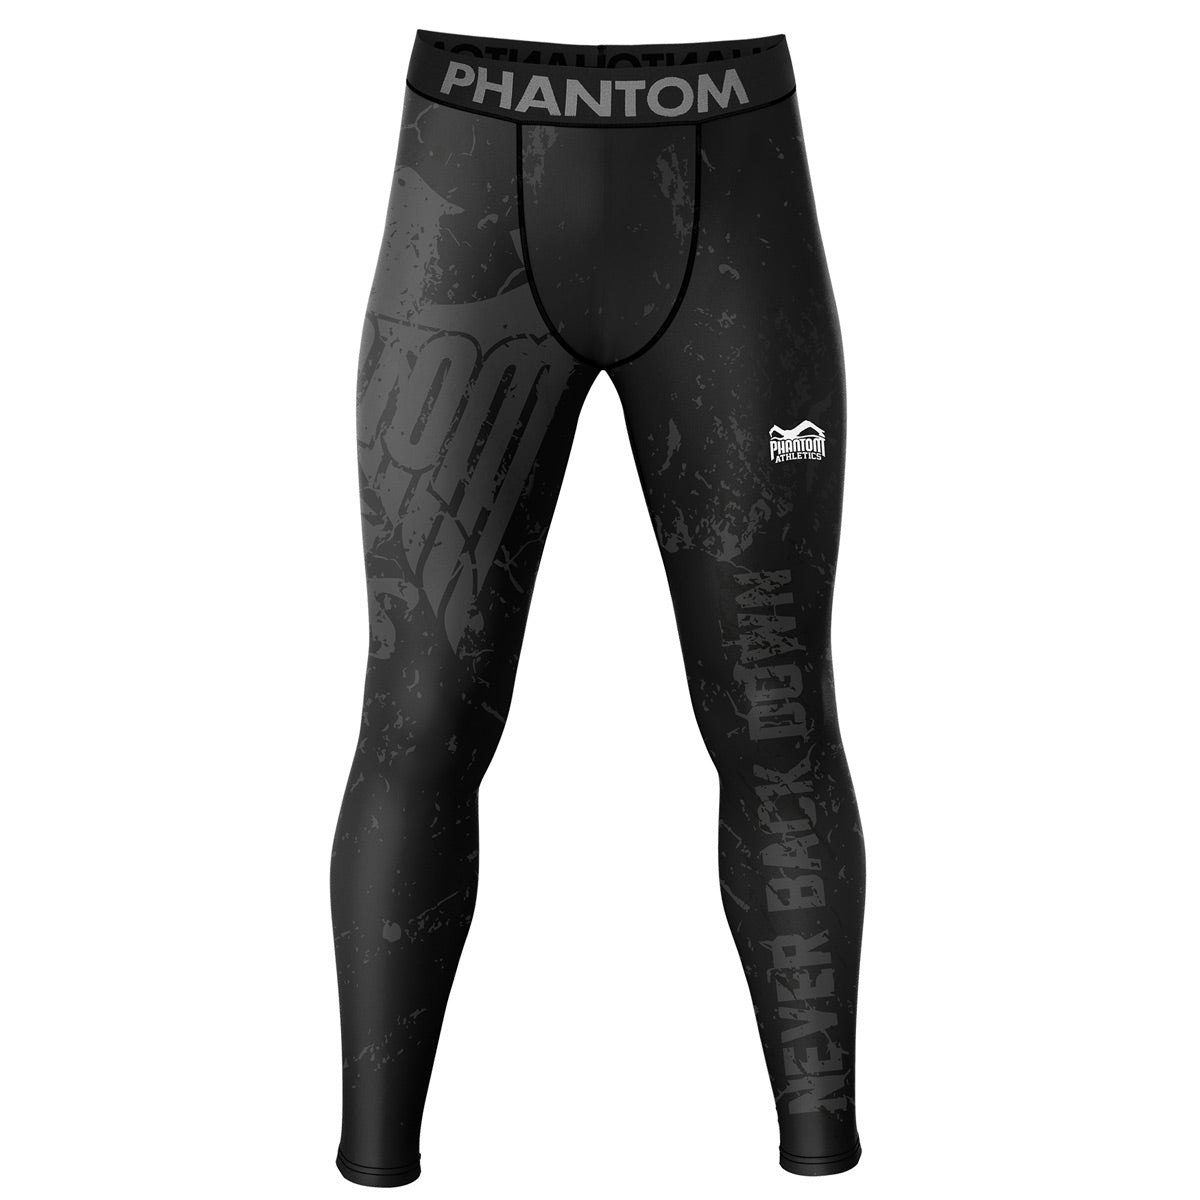 Pantaloni scurți de luptă de compresie Phantom EVO cu design Team Germany. Cu vulturul Germaniei și inscripția „Never Back Down”. Ideal pentru sporturile tale de luptă, cum ar fi MMA, Muay Thai, lupte, BJJ sau kickboxing.